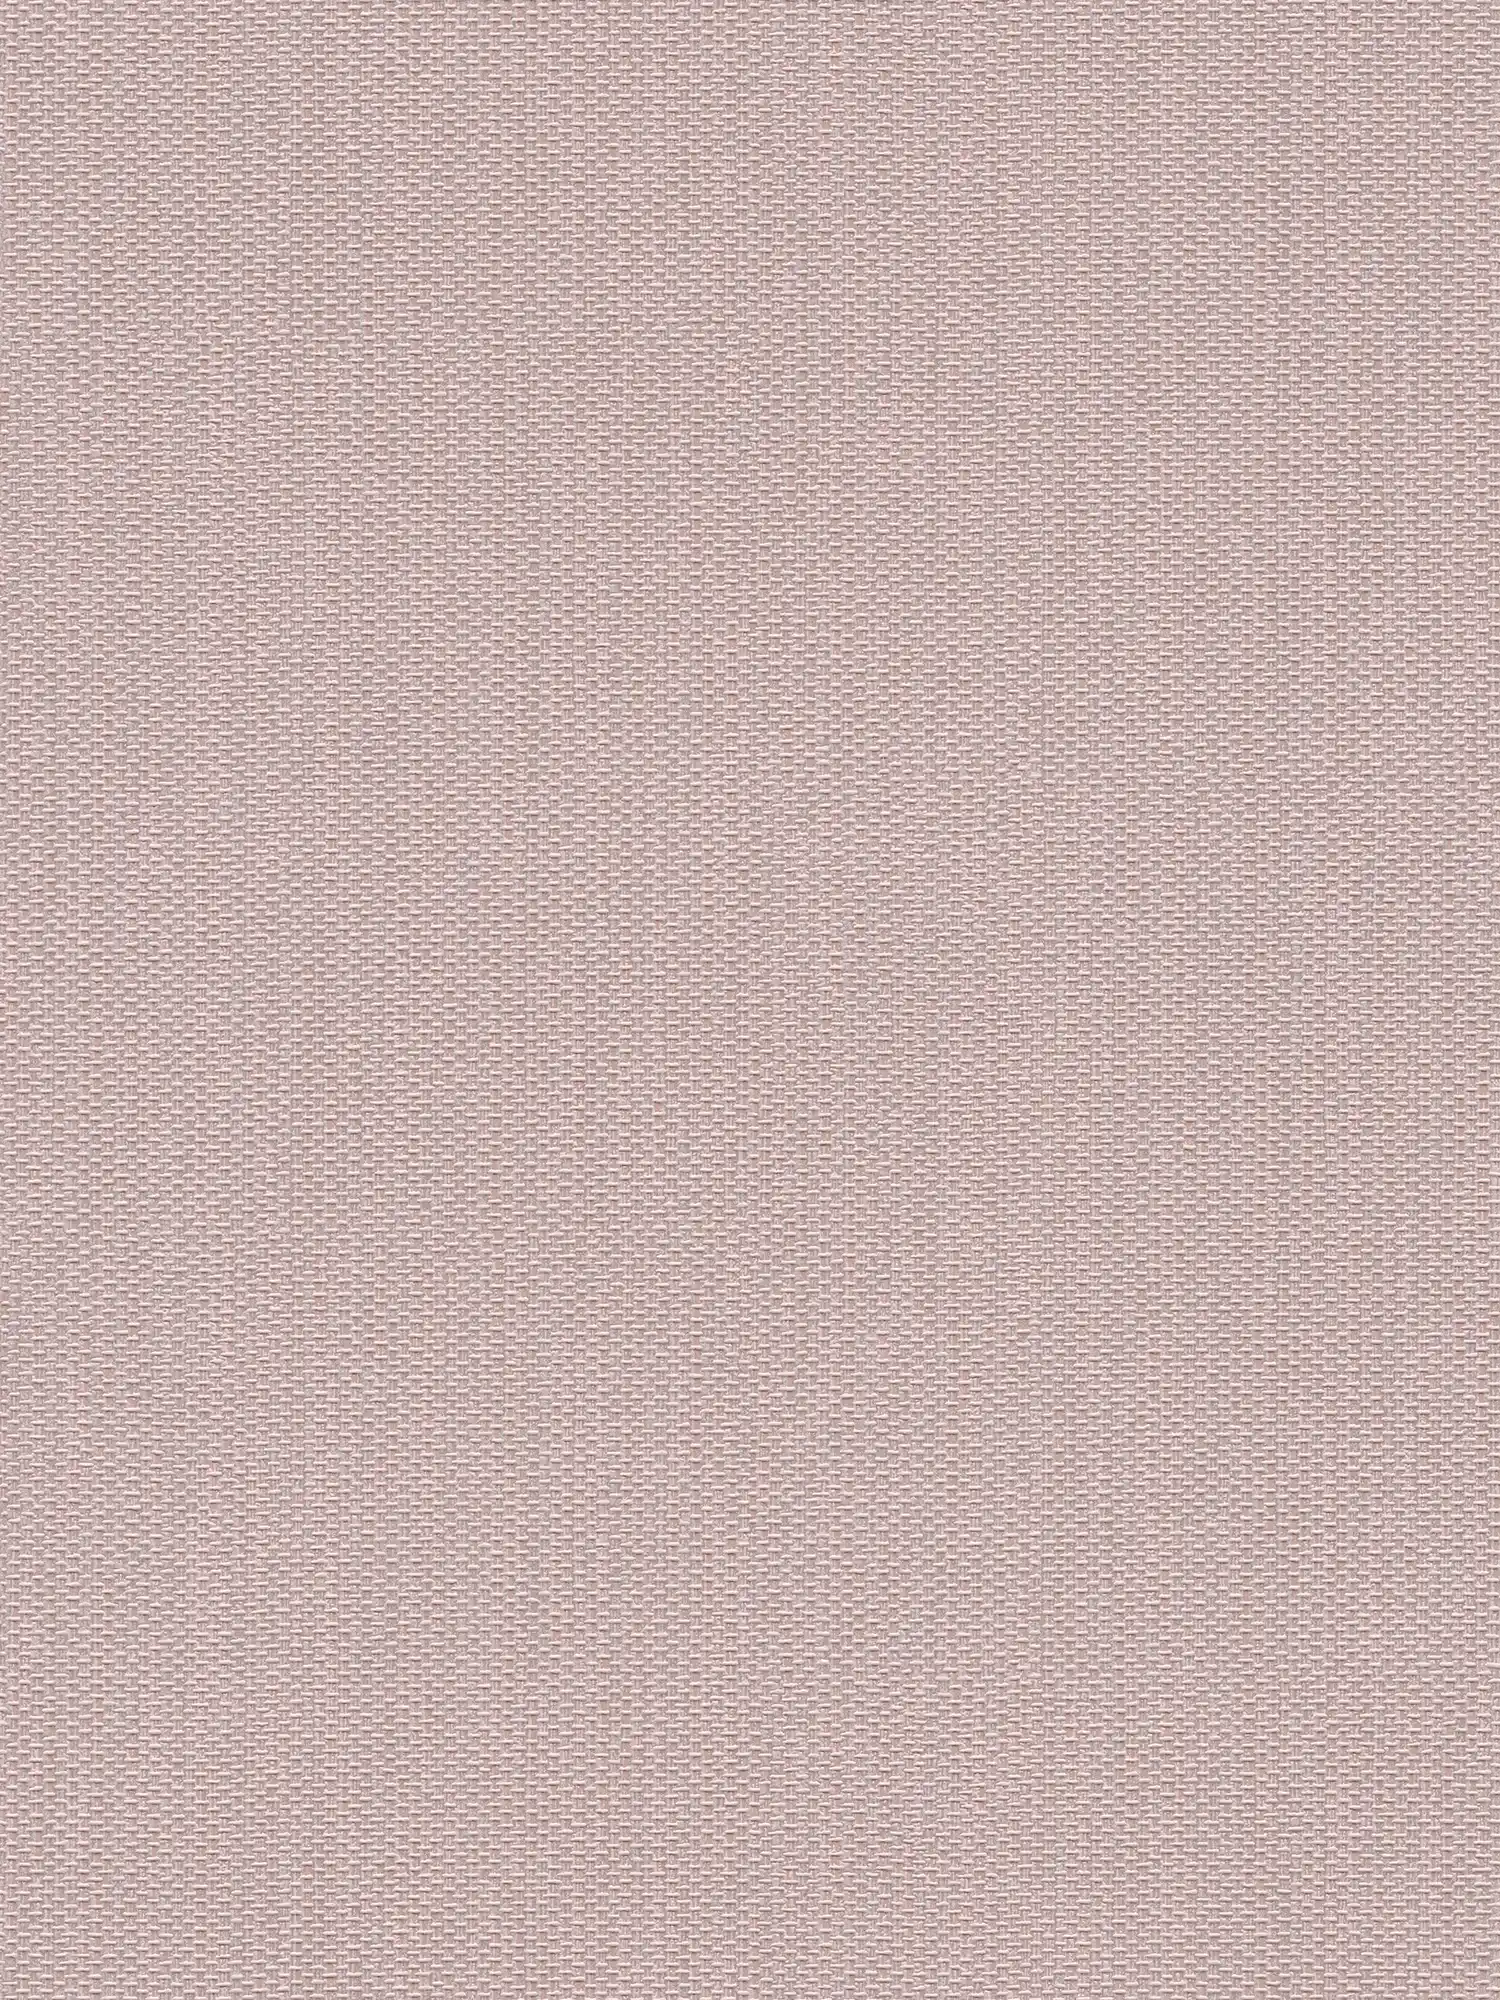 Vliesbehang met structuur in textiellook - roze, zilver
